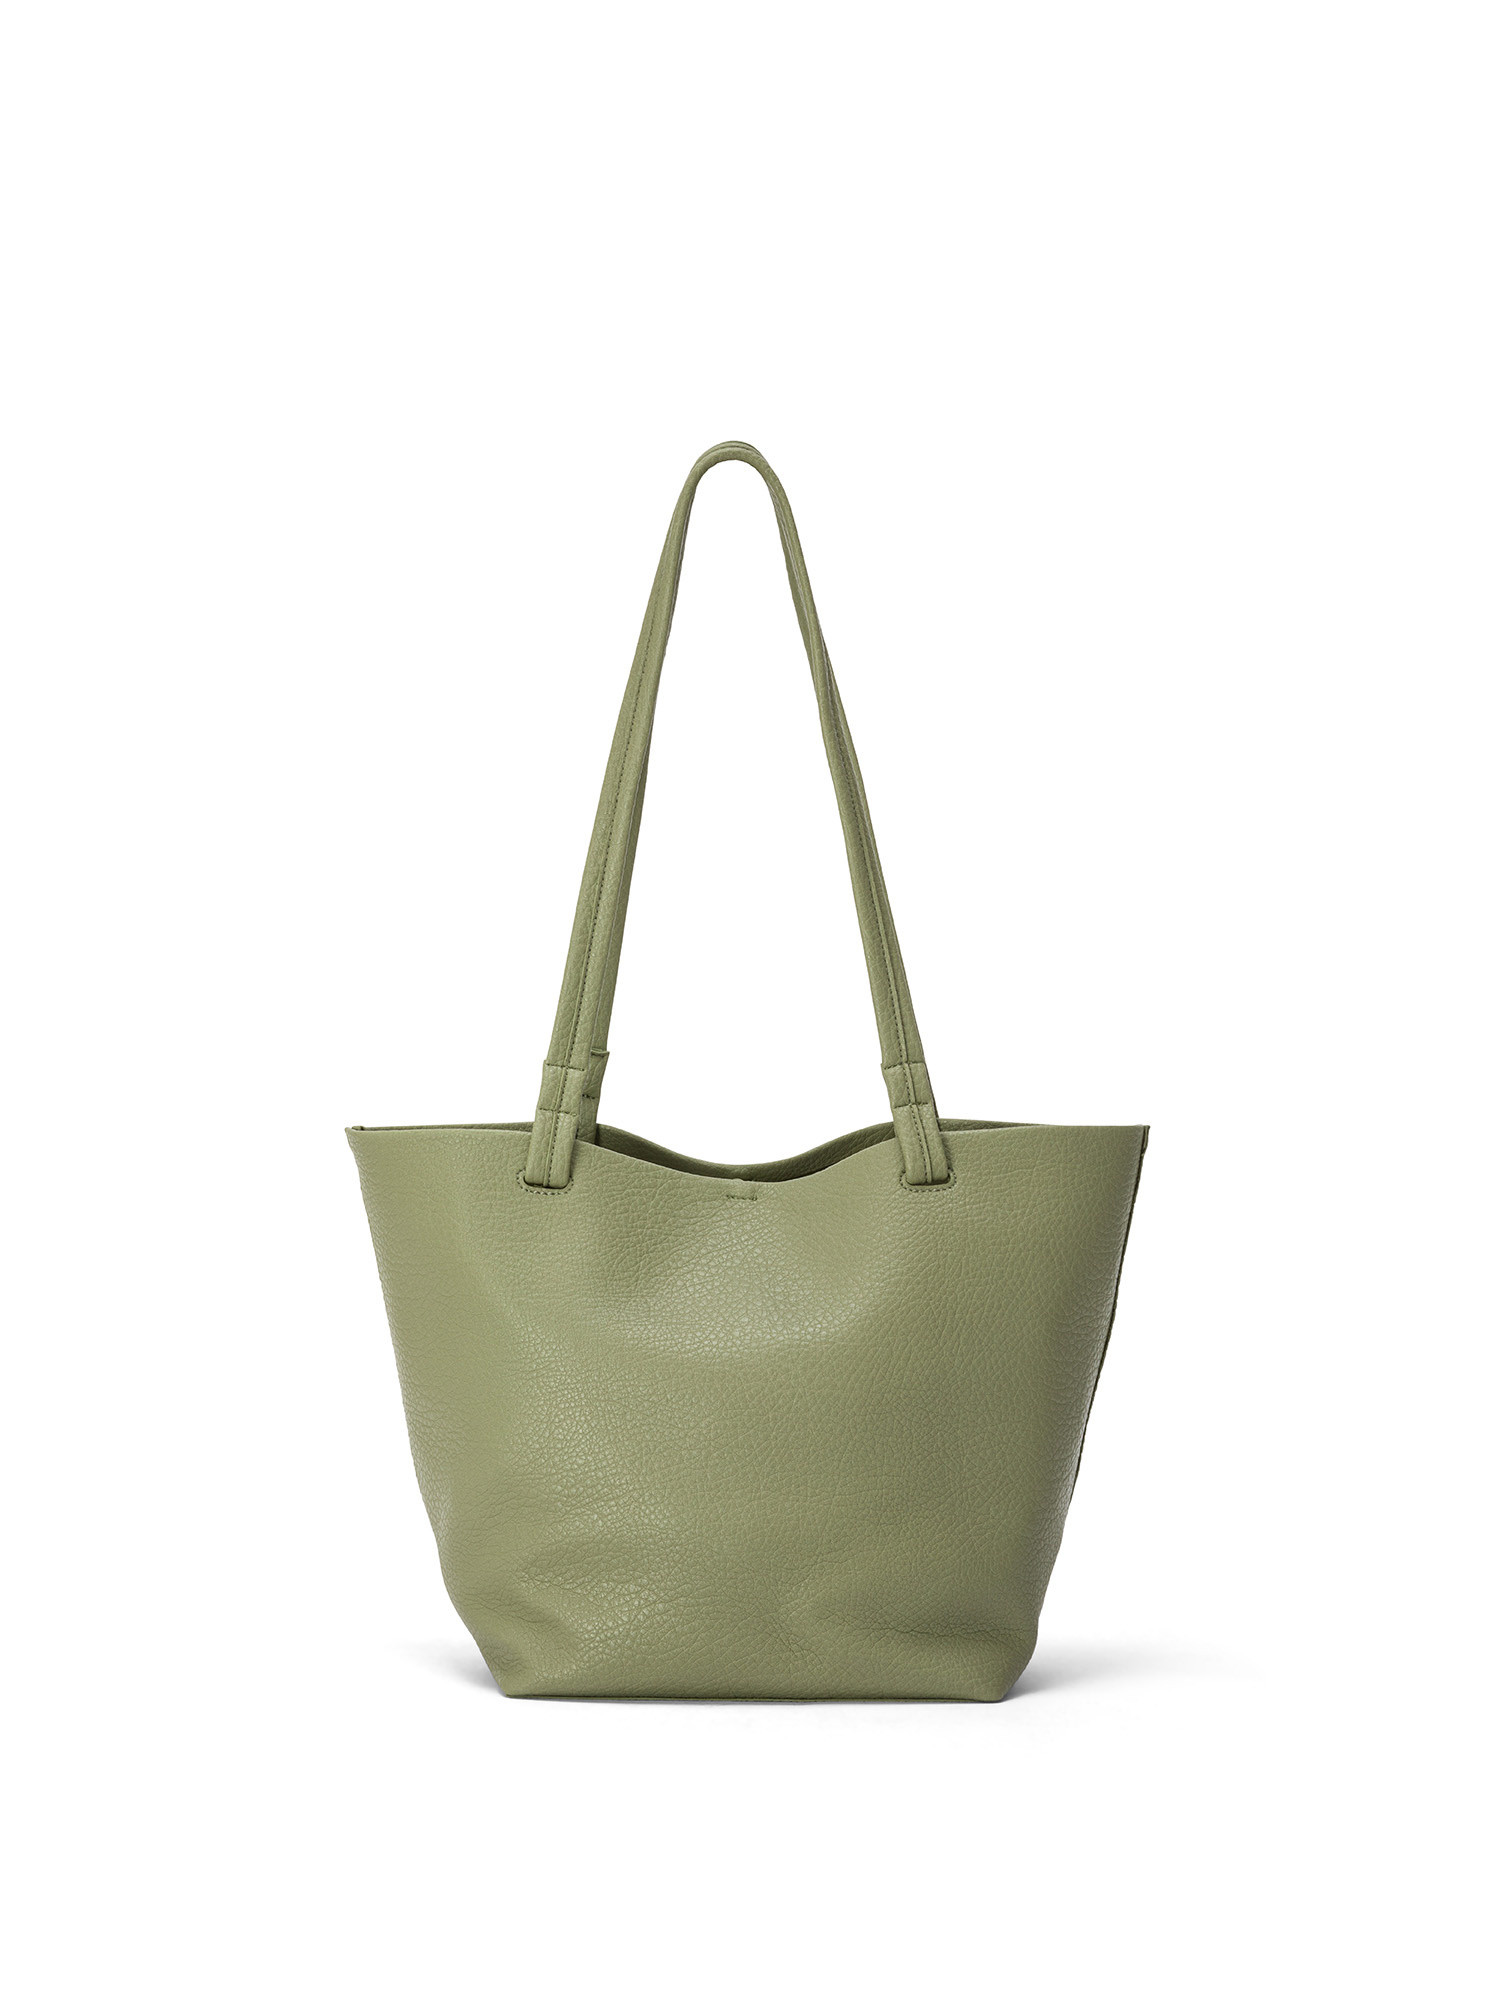 Koan - Shopping bag, Green, large image number 0